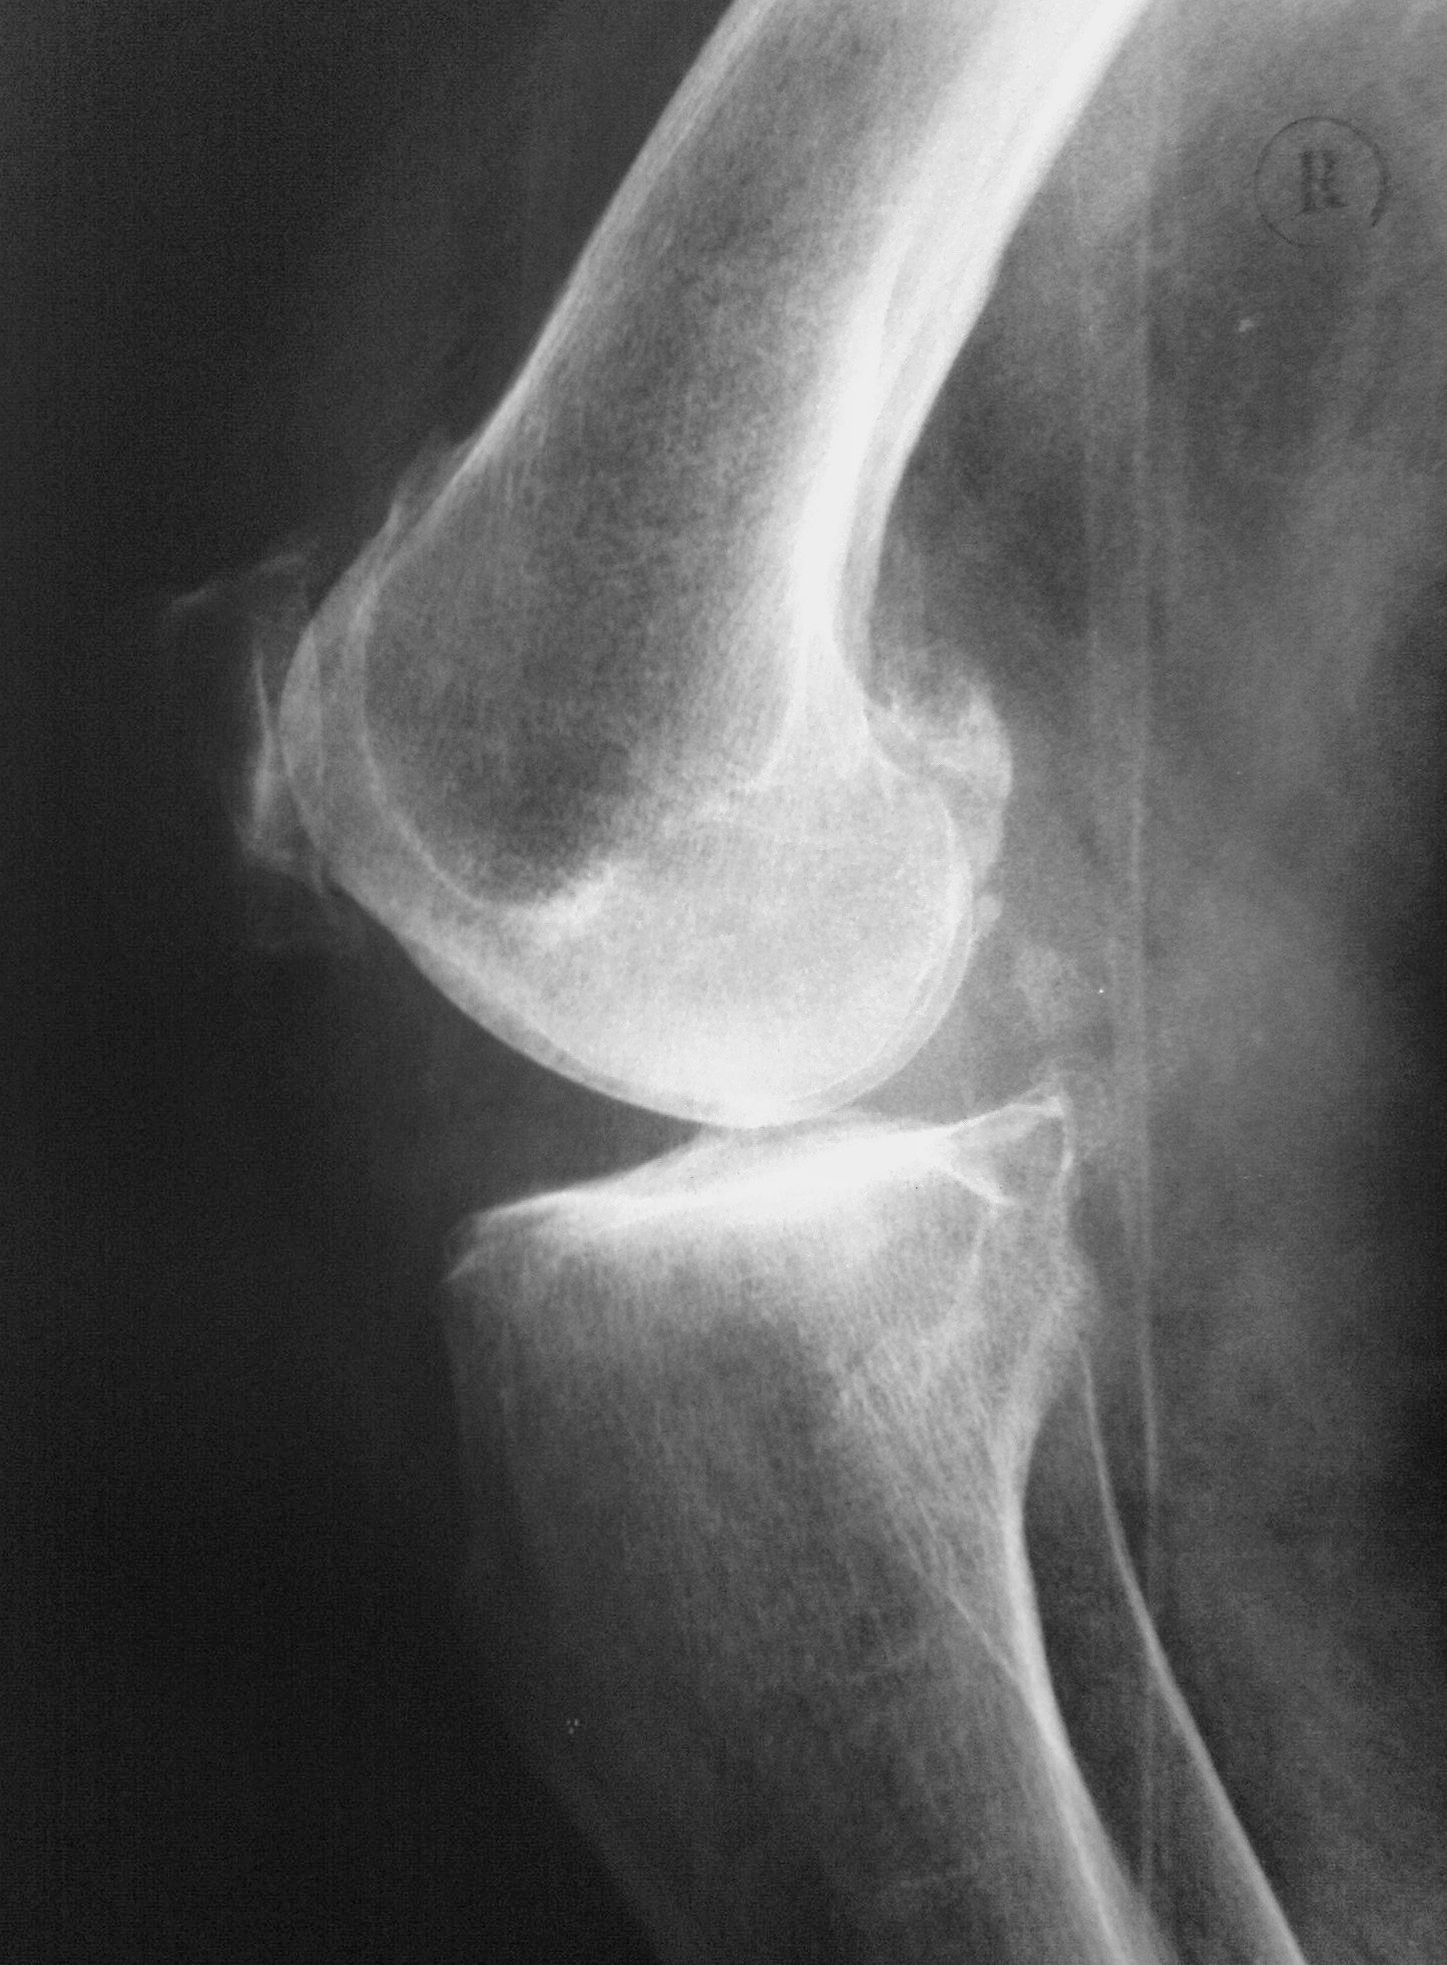 Рентген колена. Остеоартроз коленного сустава рентген снимок.